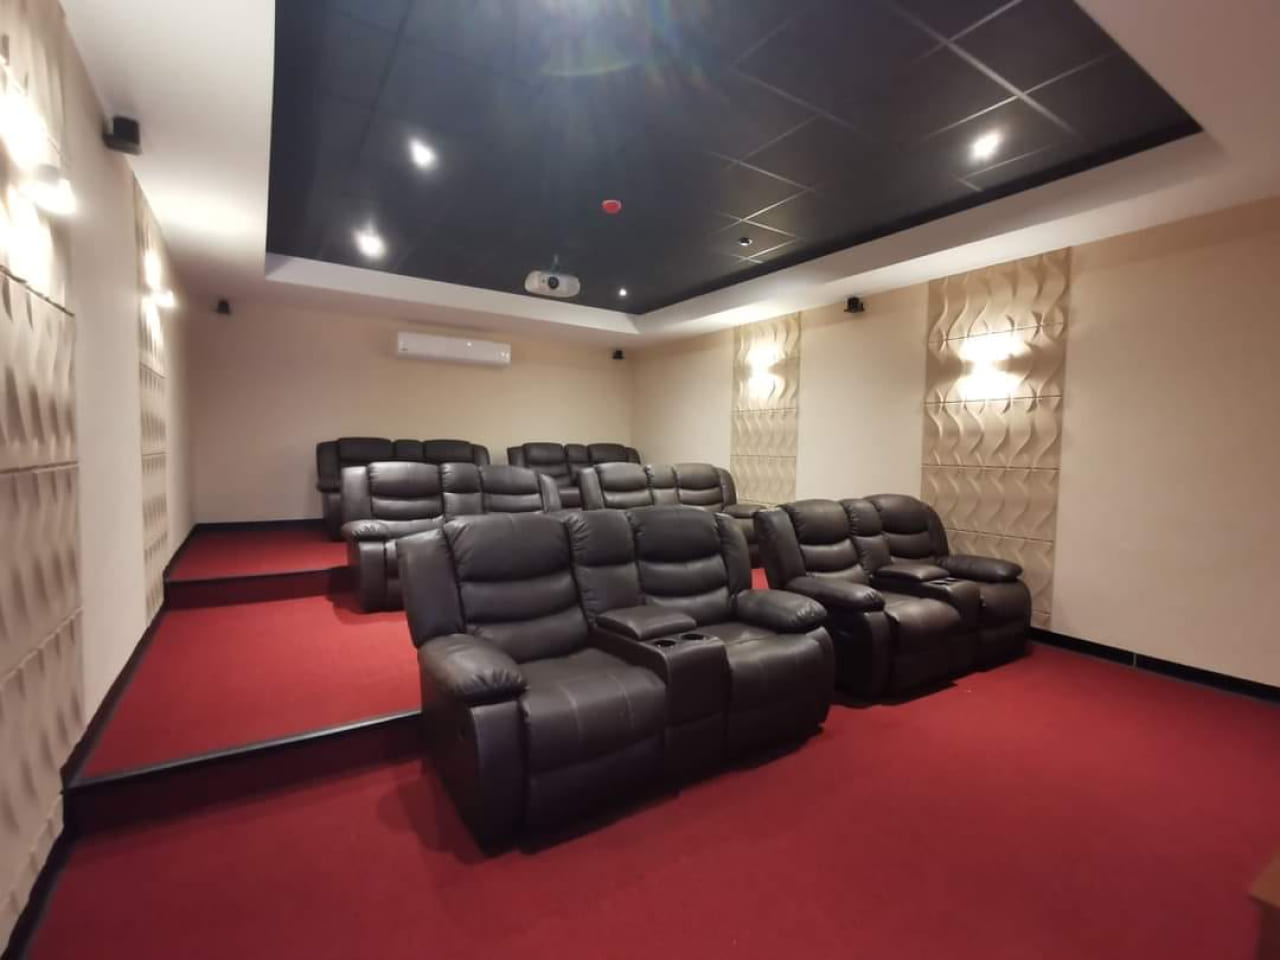 Área de cine, cuenta con suelo de alfombra roja, paredes de color blanco con material antiecos, sillones de color café.